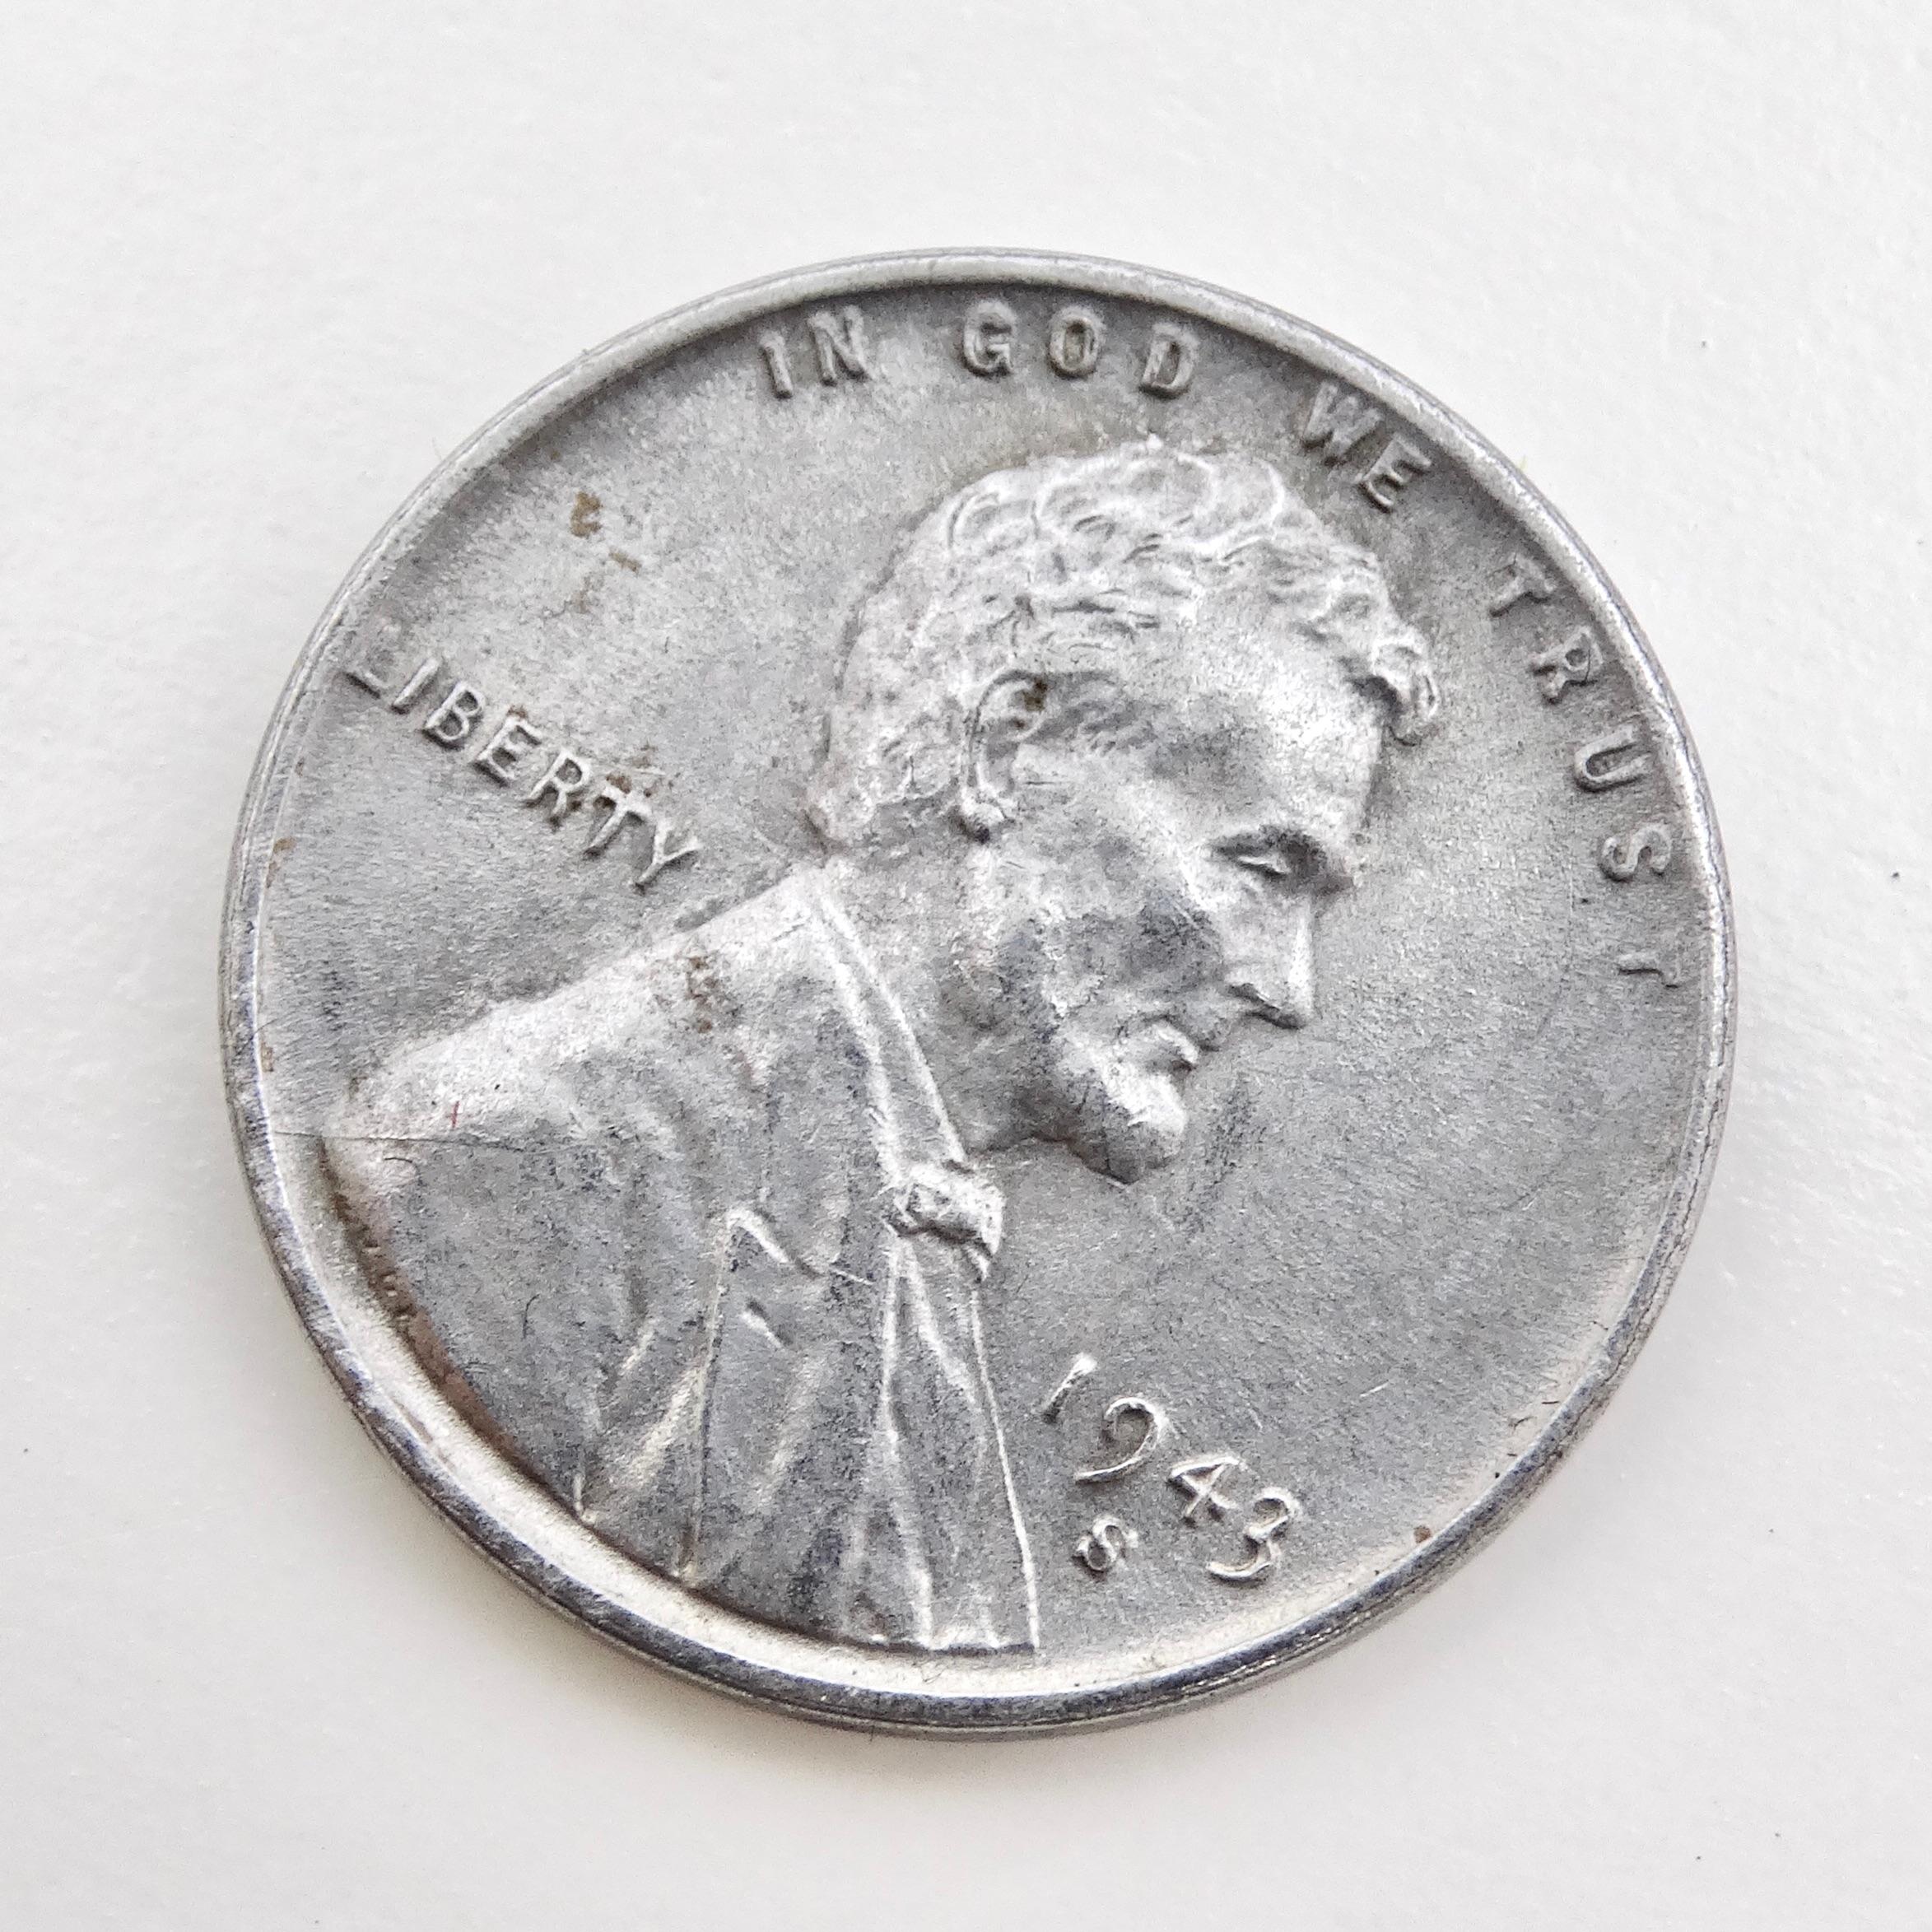 Der stählerne Lincoln Cent von 1943 ist eine seltene und historisch bedeutsame Sammlermünze, die als greifbare Erinnerung an eine einzigartige Periode der amerikanischen Geschichte dient. Während des Zweiten Weltkriegs herrschte in den Vereinigten